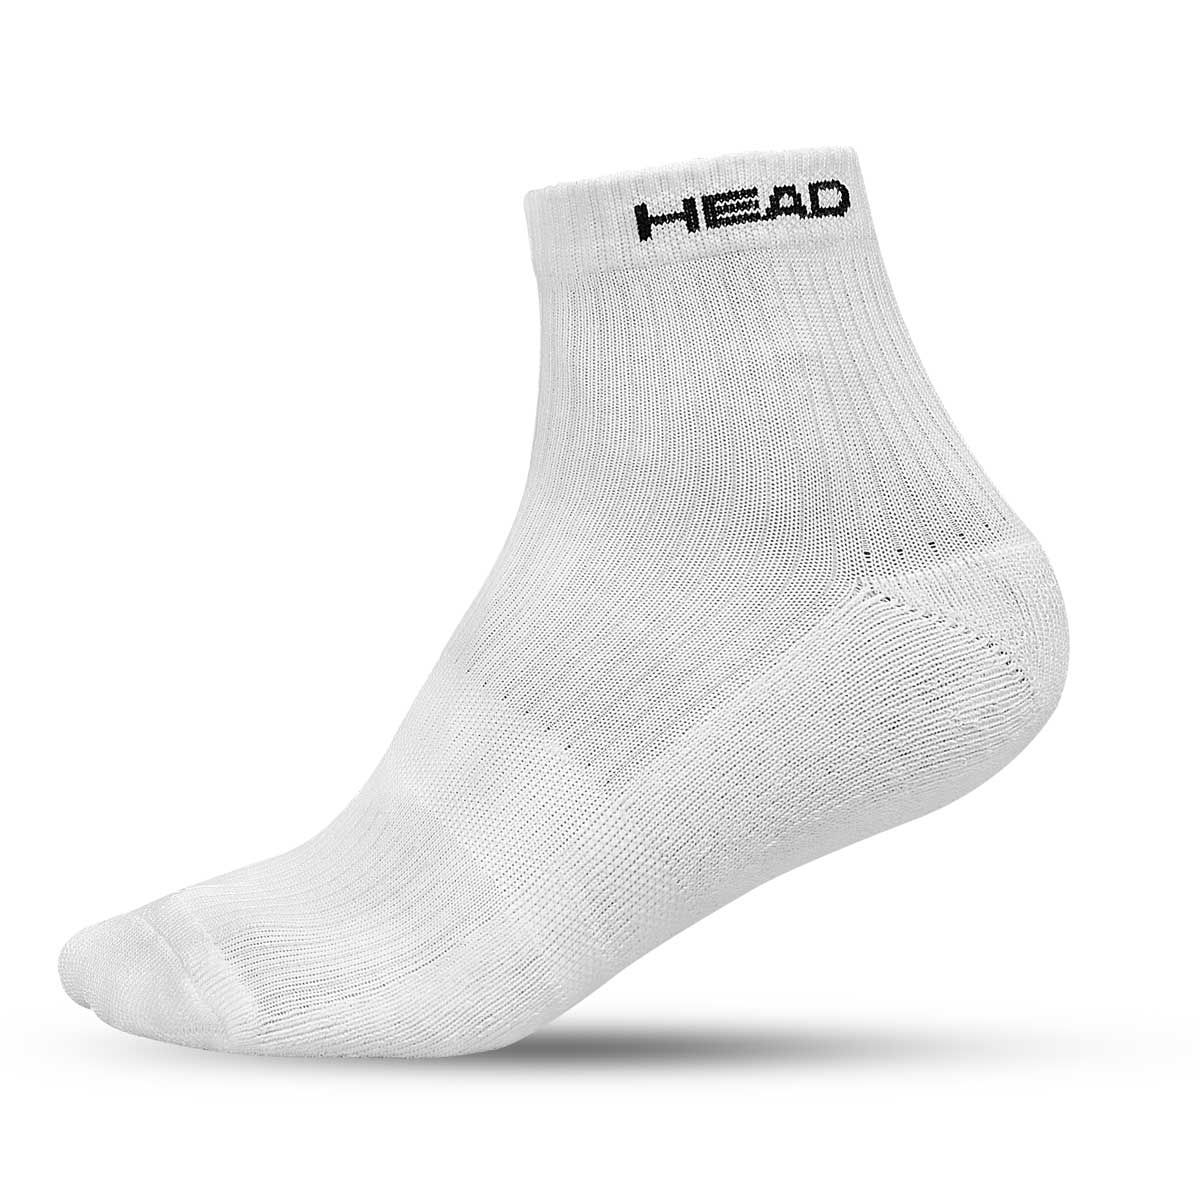  Head HSK-73 Ankle Socks (White)